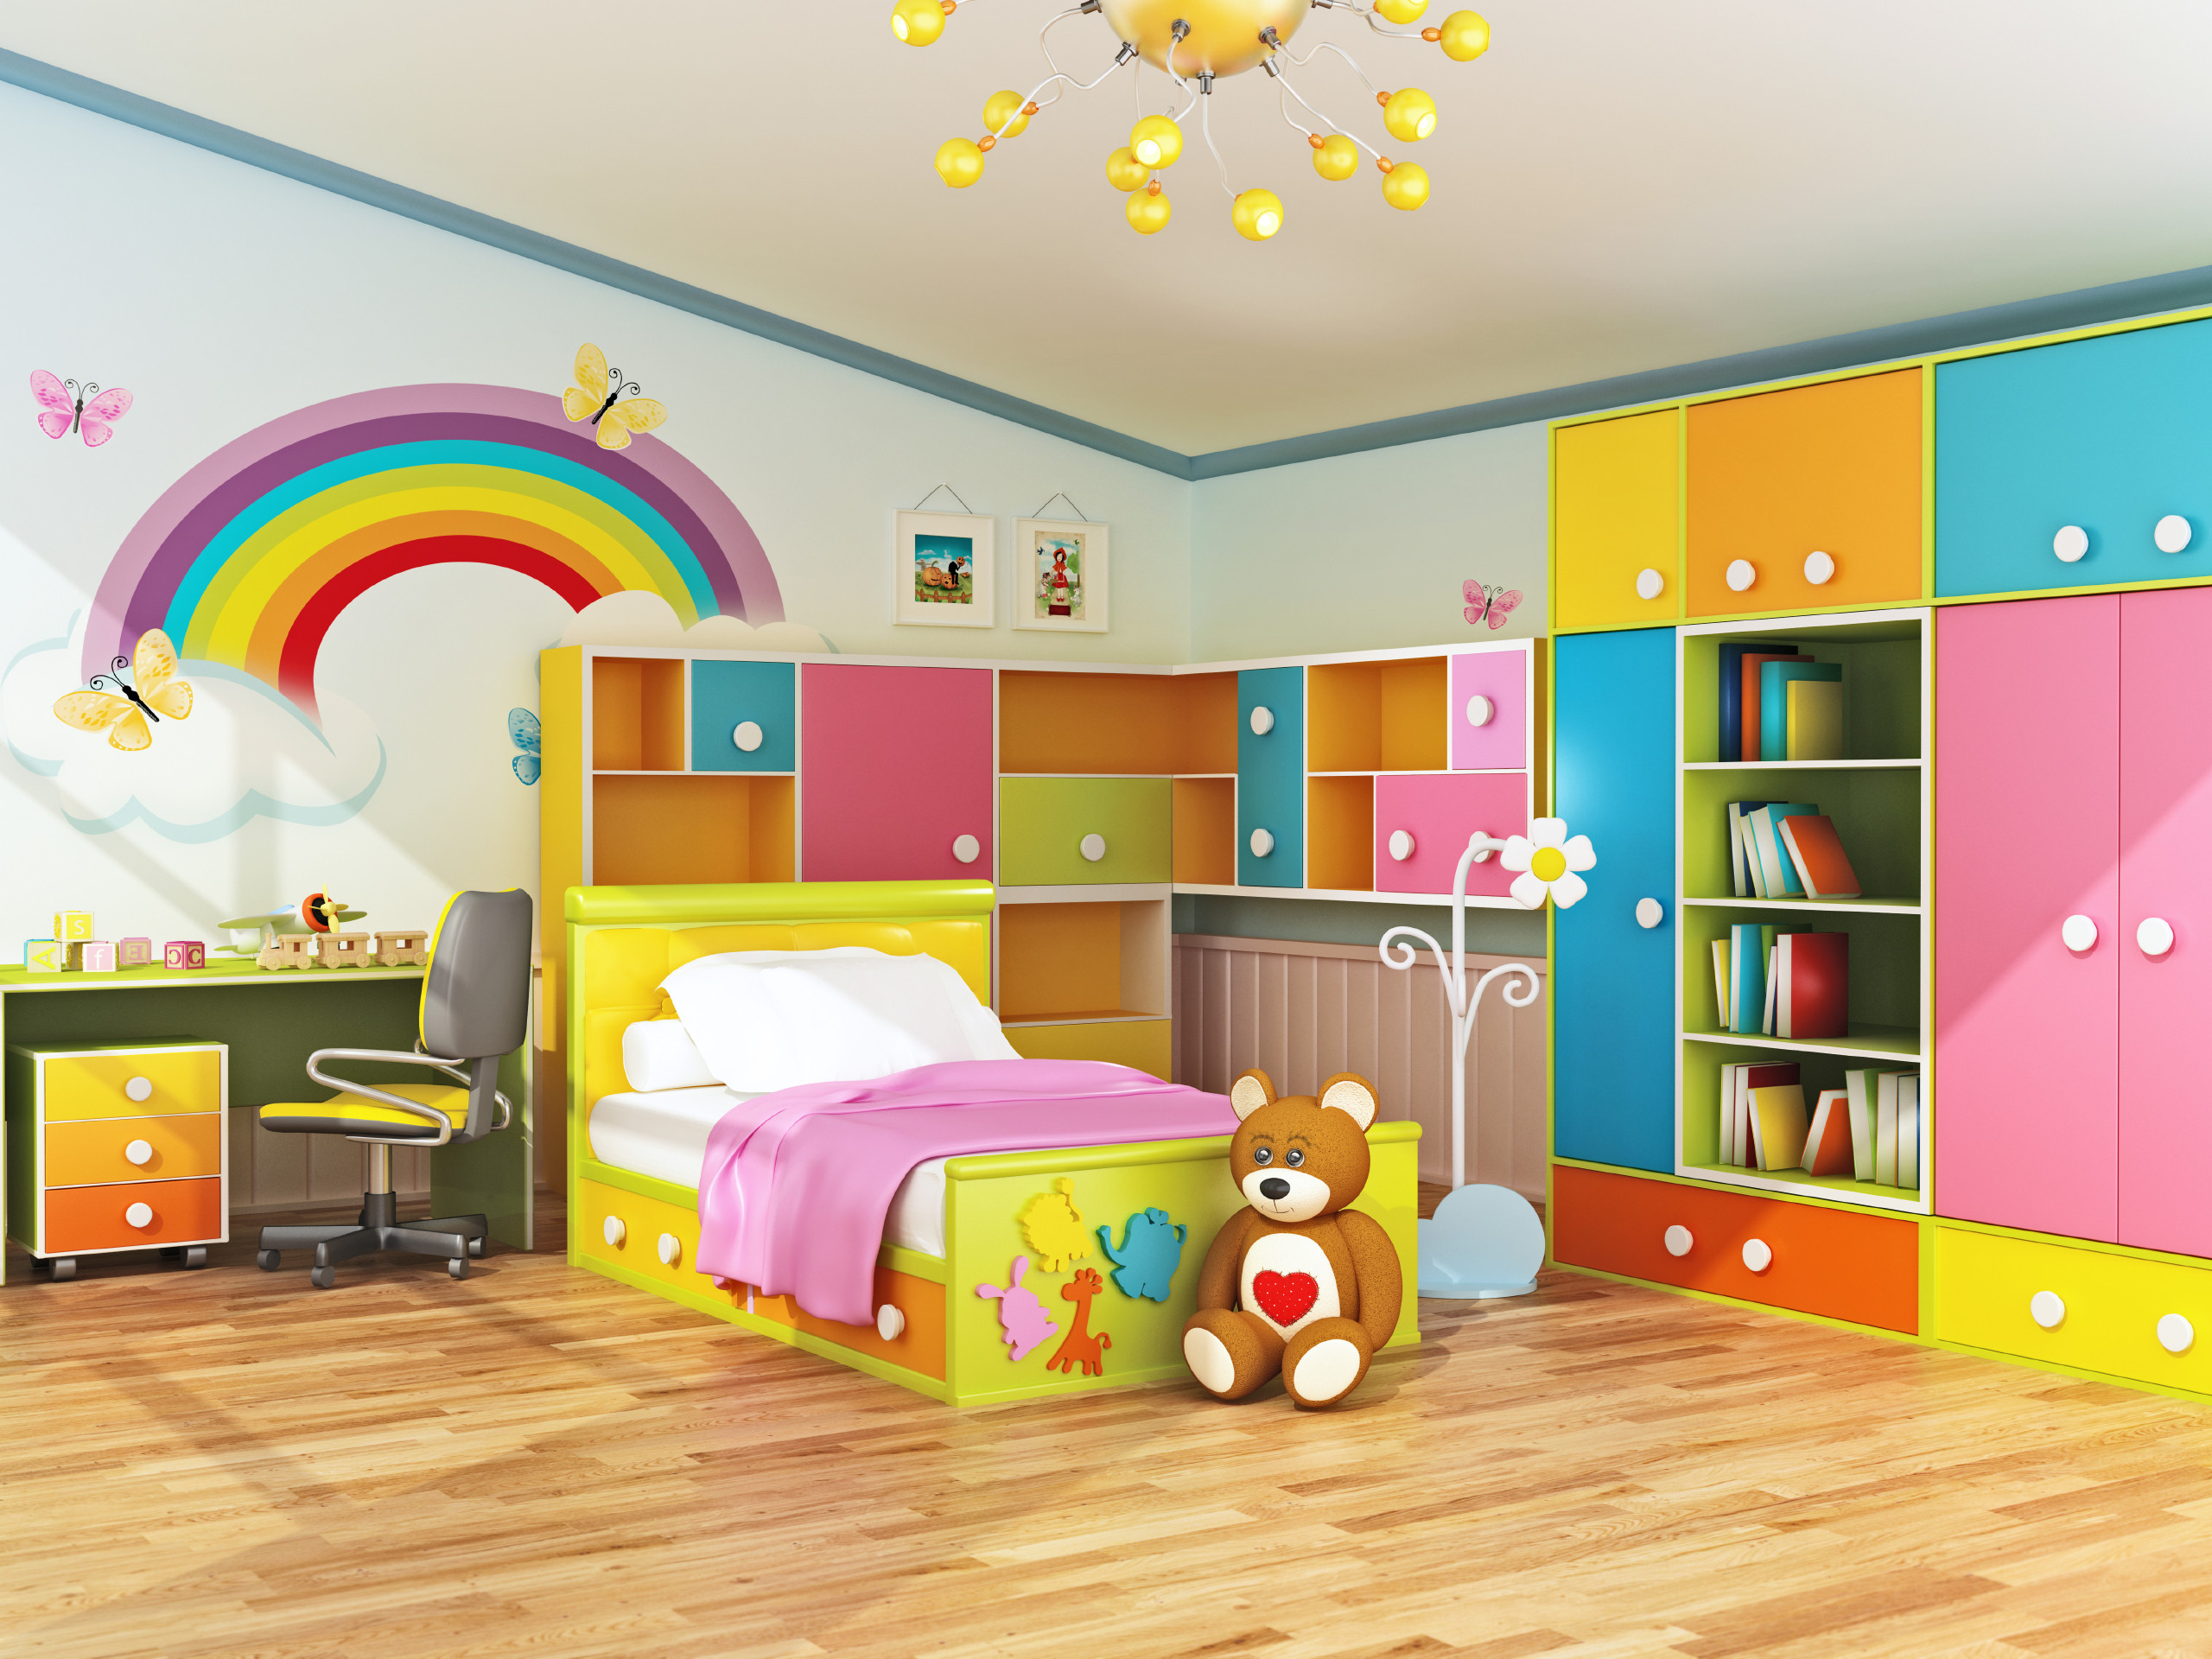 Decor Kids Bedrooms
 Plan Ahead When Decorating Kids Bedrooms